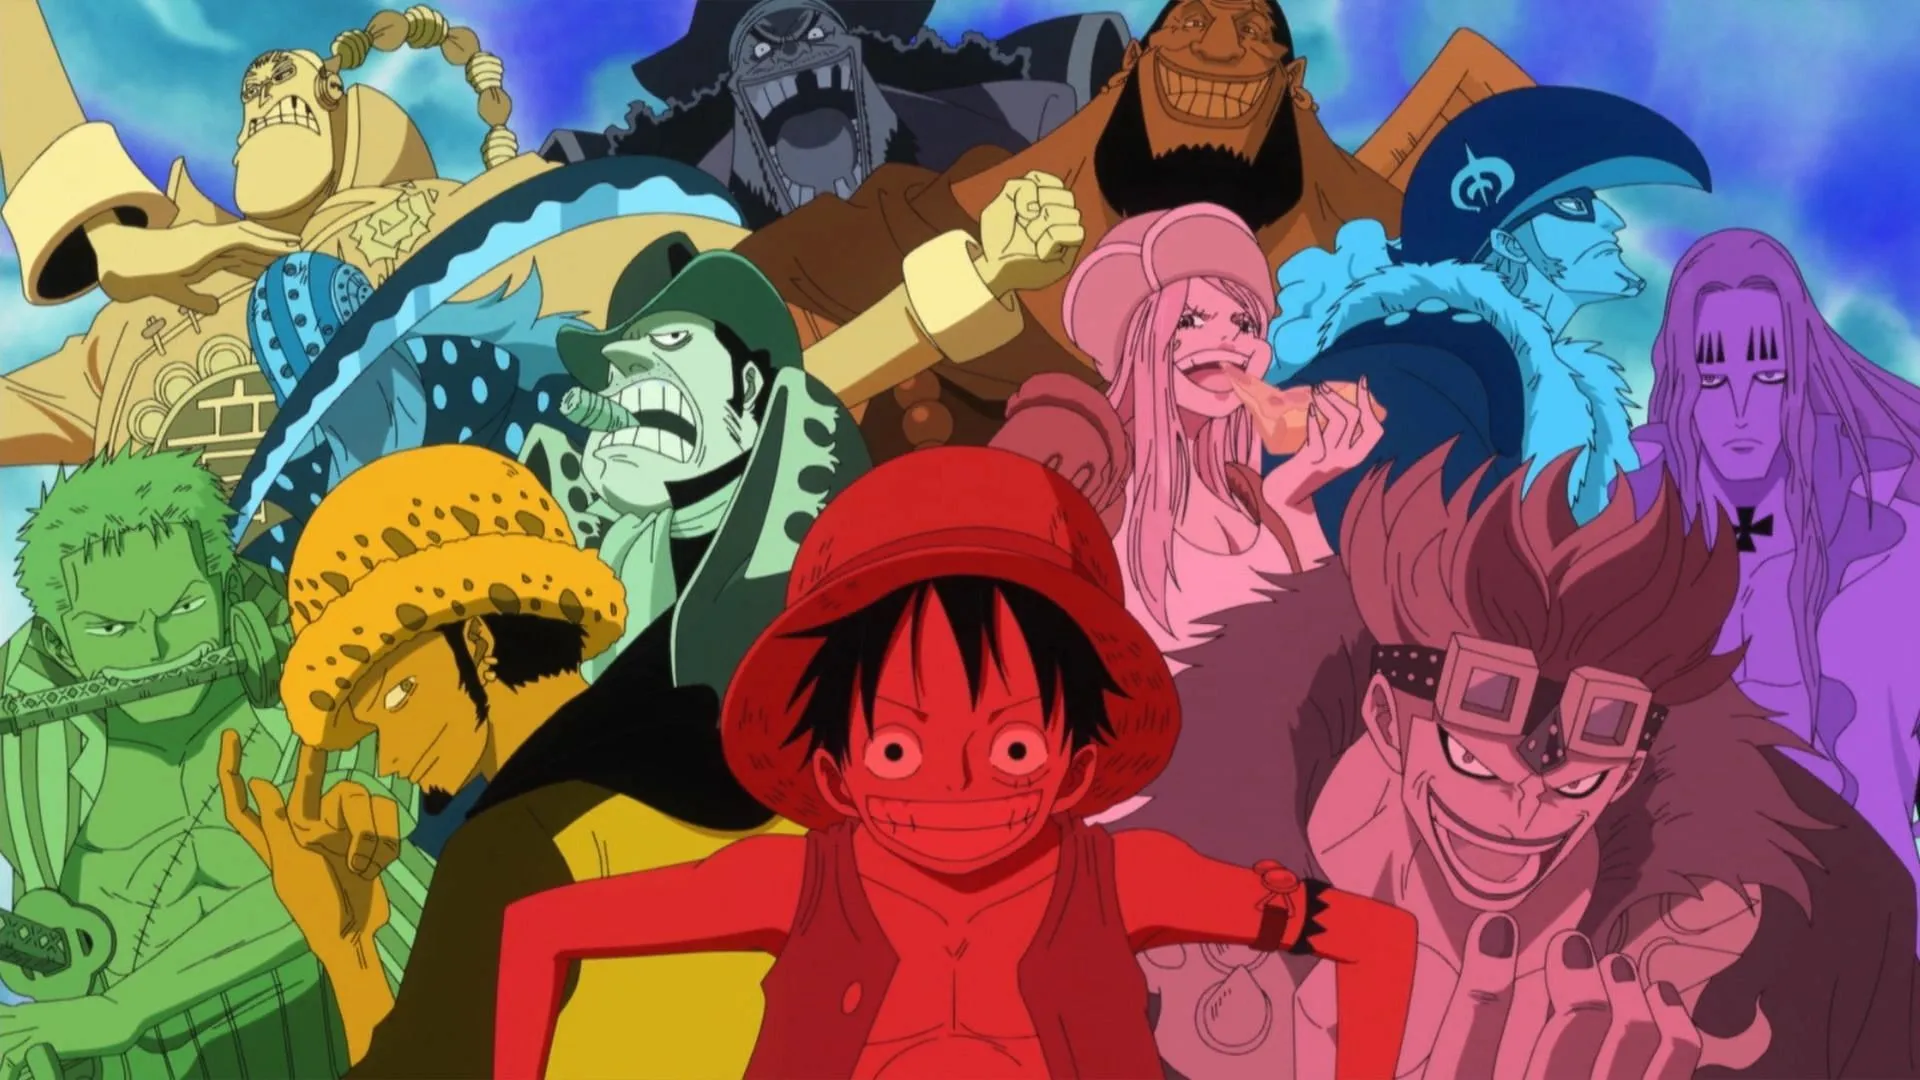 Bonney faz parte da Pior Geração de One Piece, que inclui Barba Negra e os Onze Supernovas (Imagem via Toei Animation, One Piece)